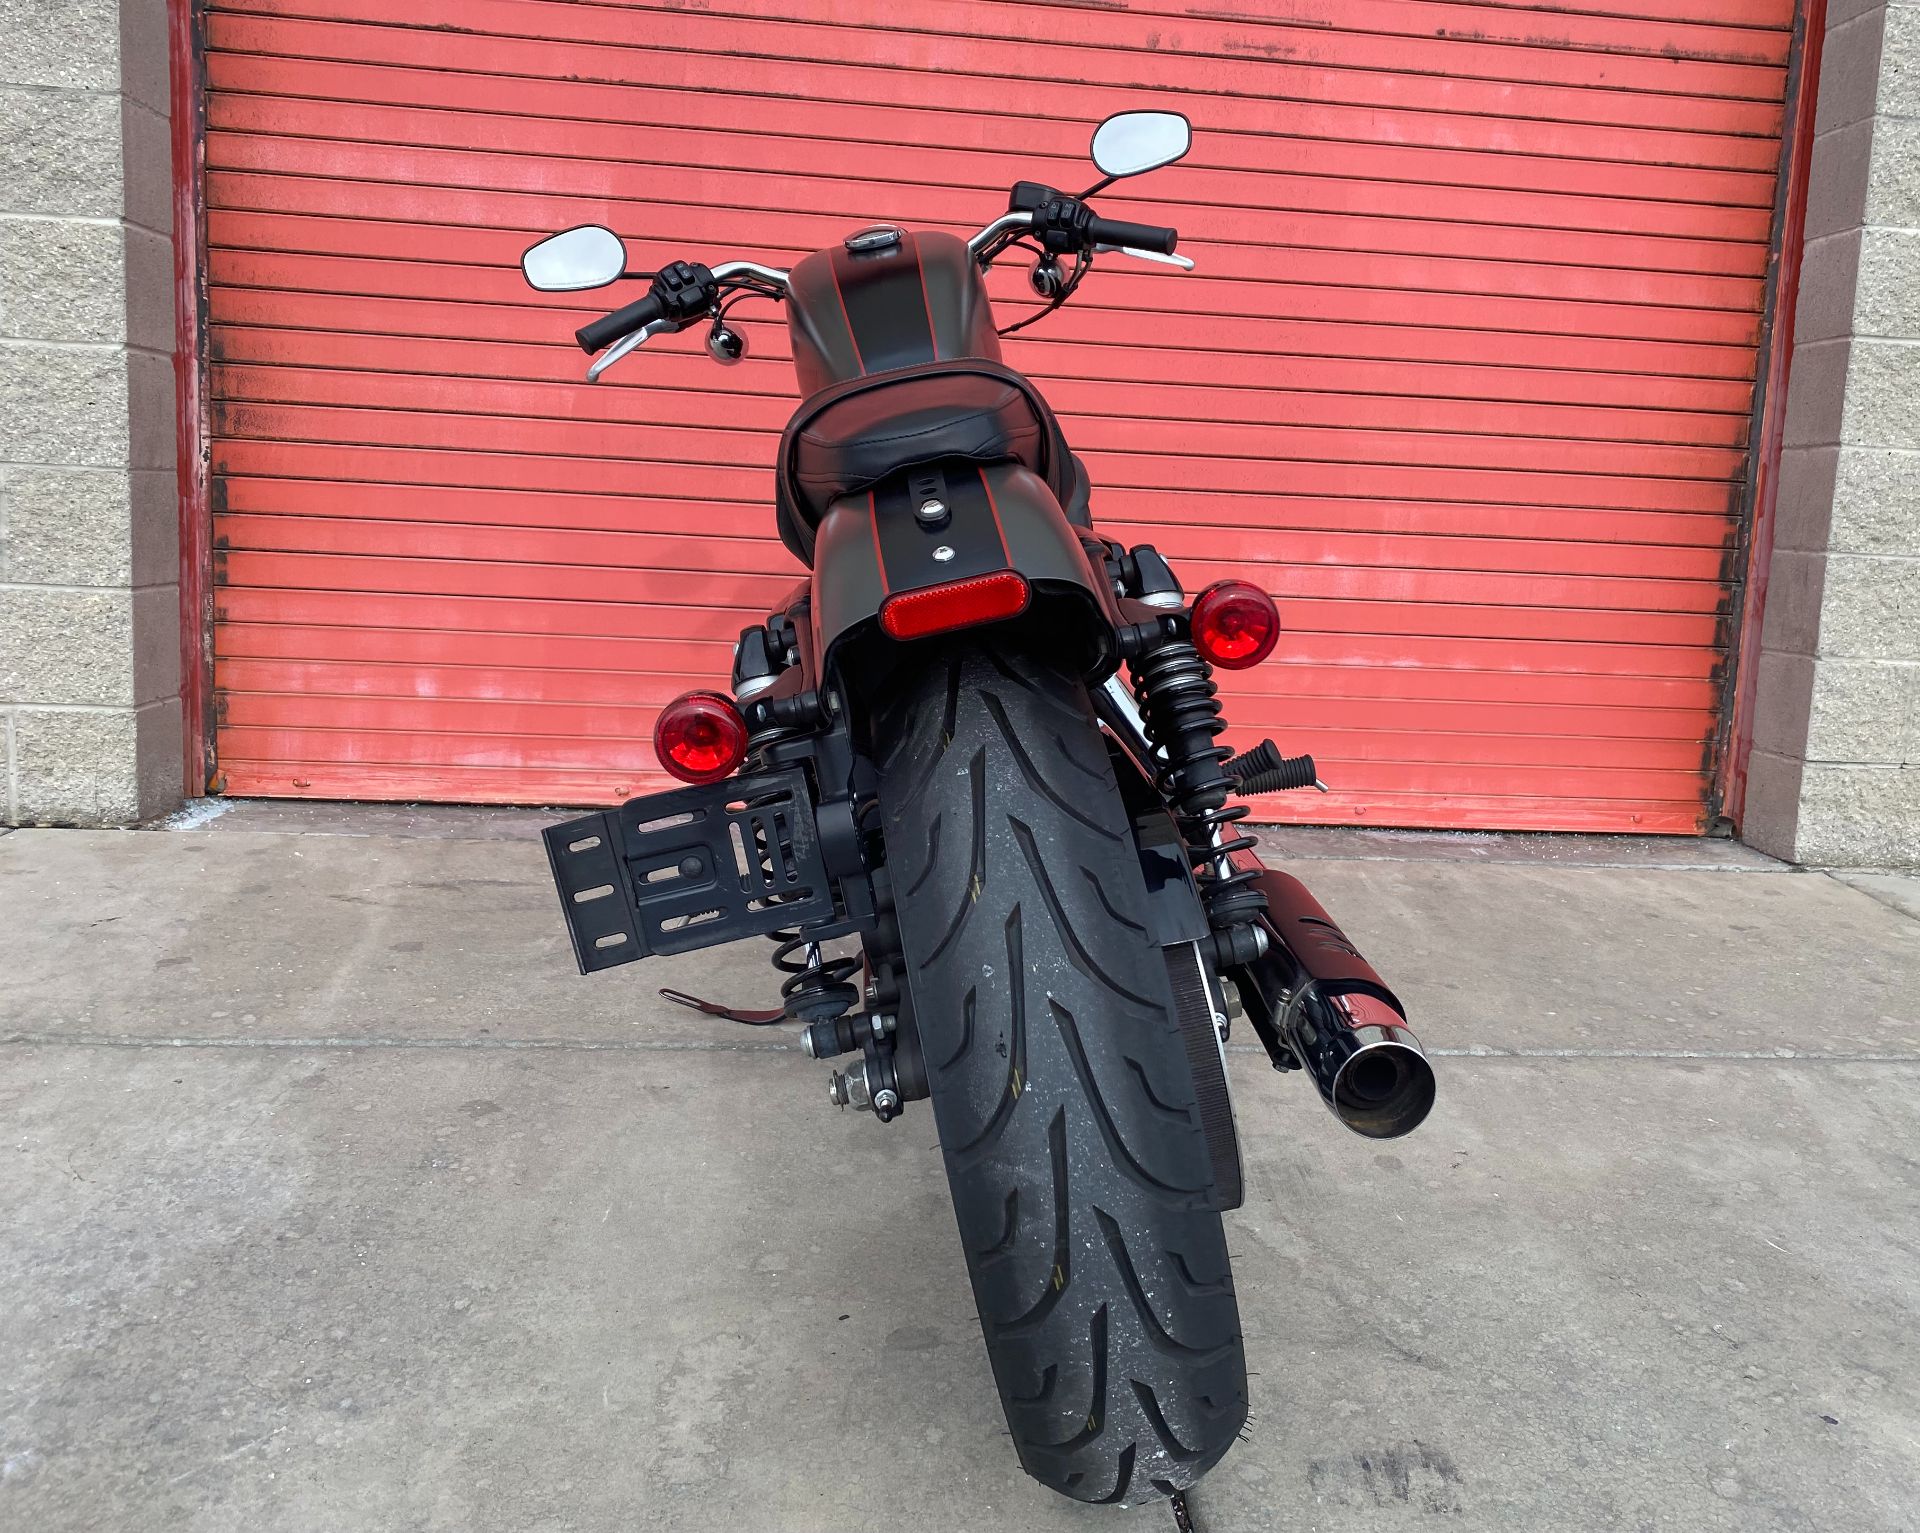 2018 Harley-Davidson Roadster™ in Sandy, Utah - Photo 7